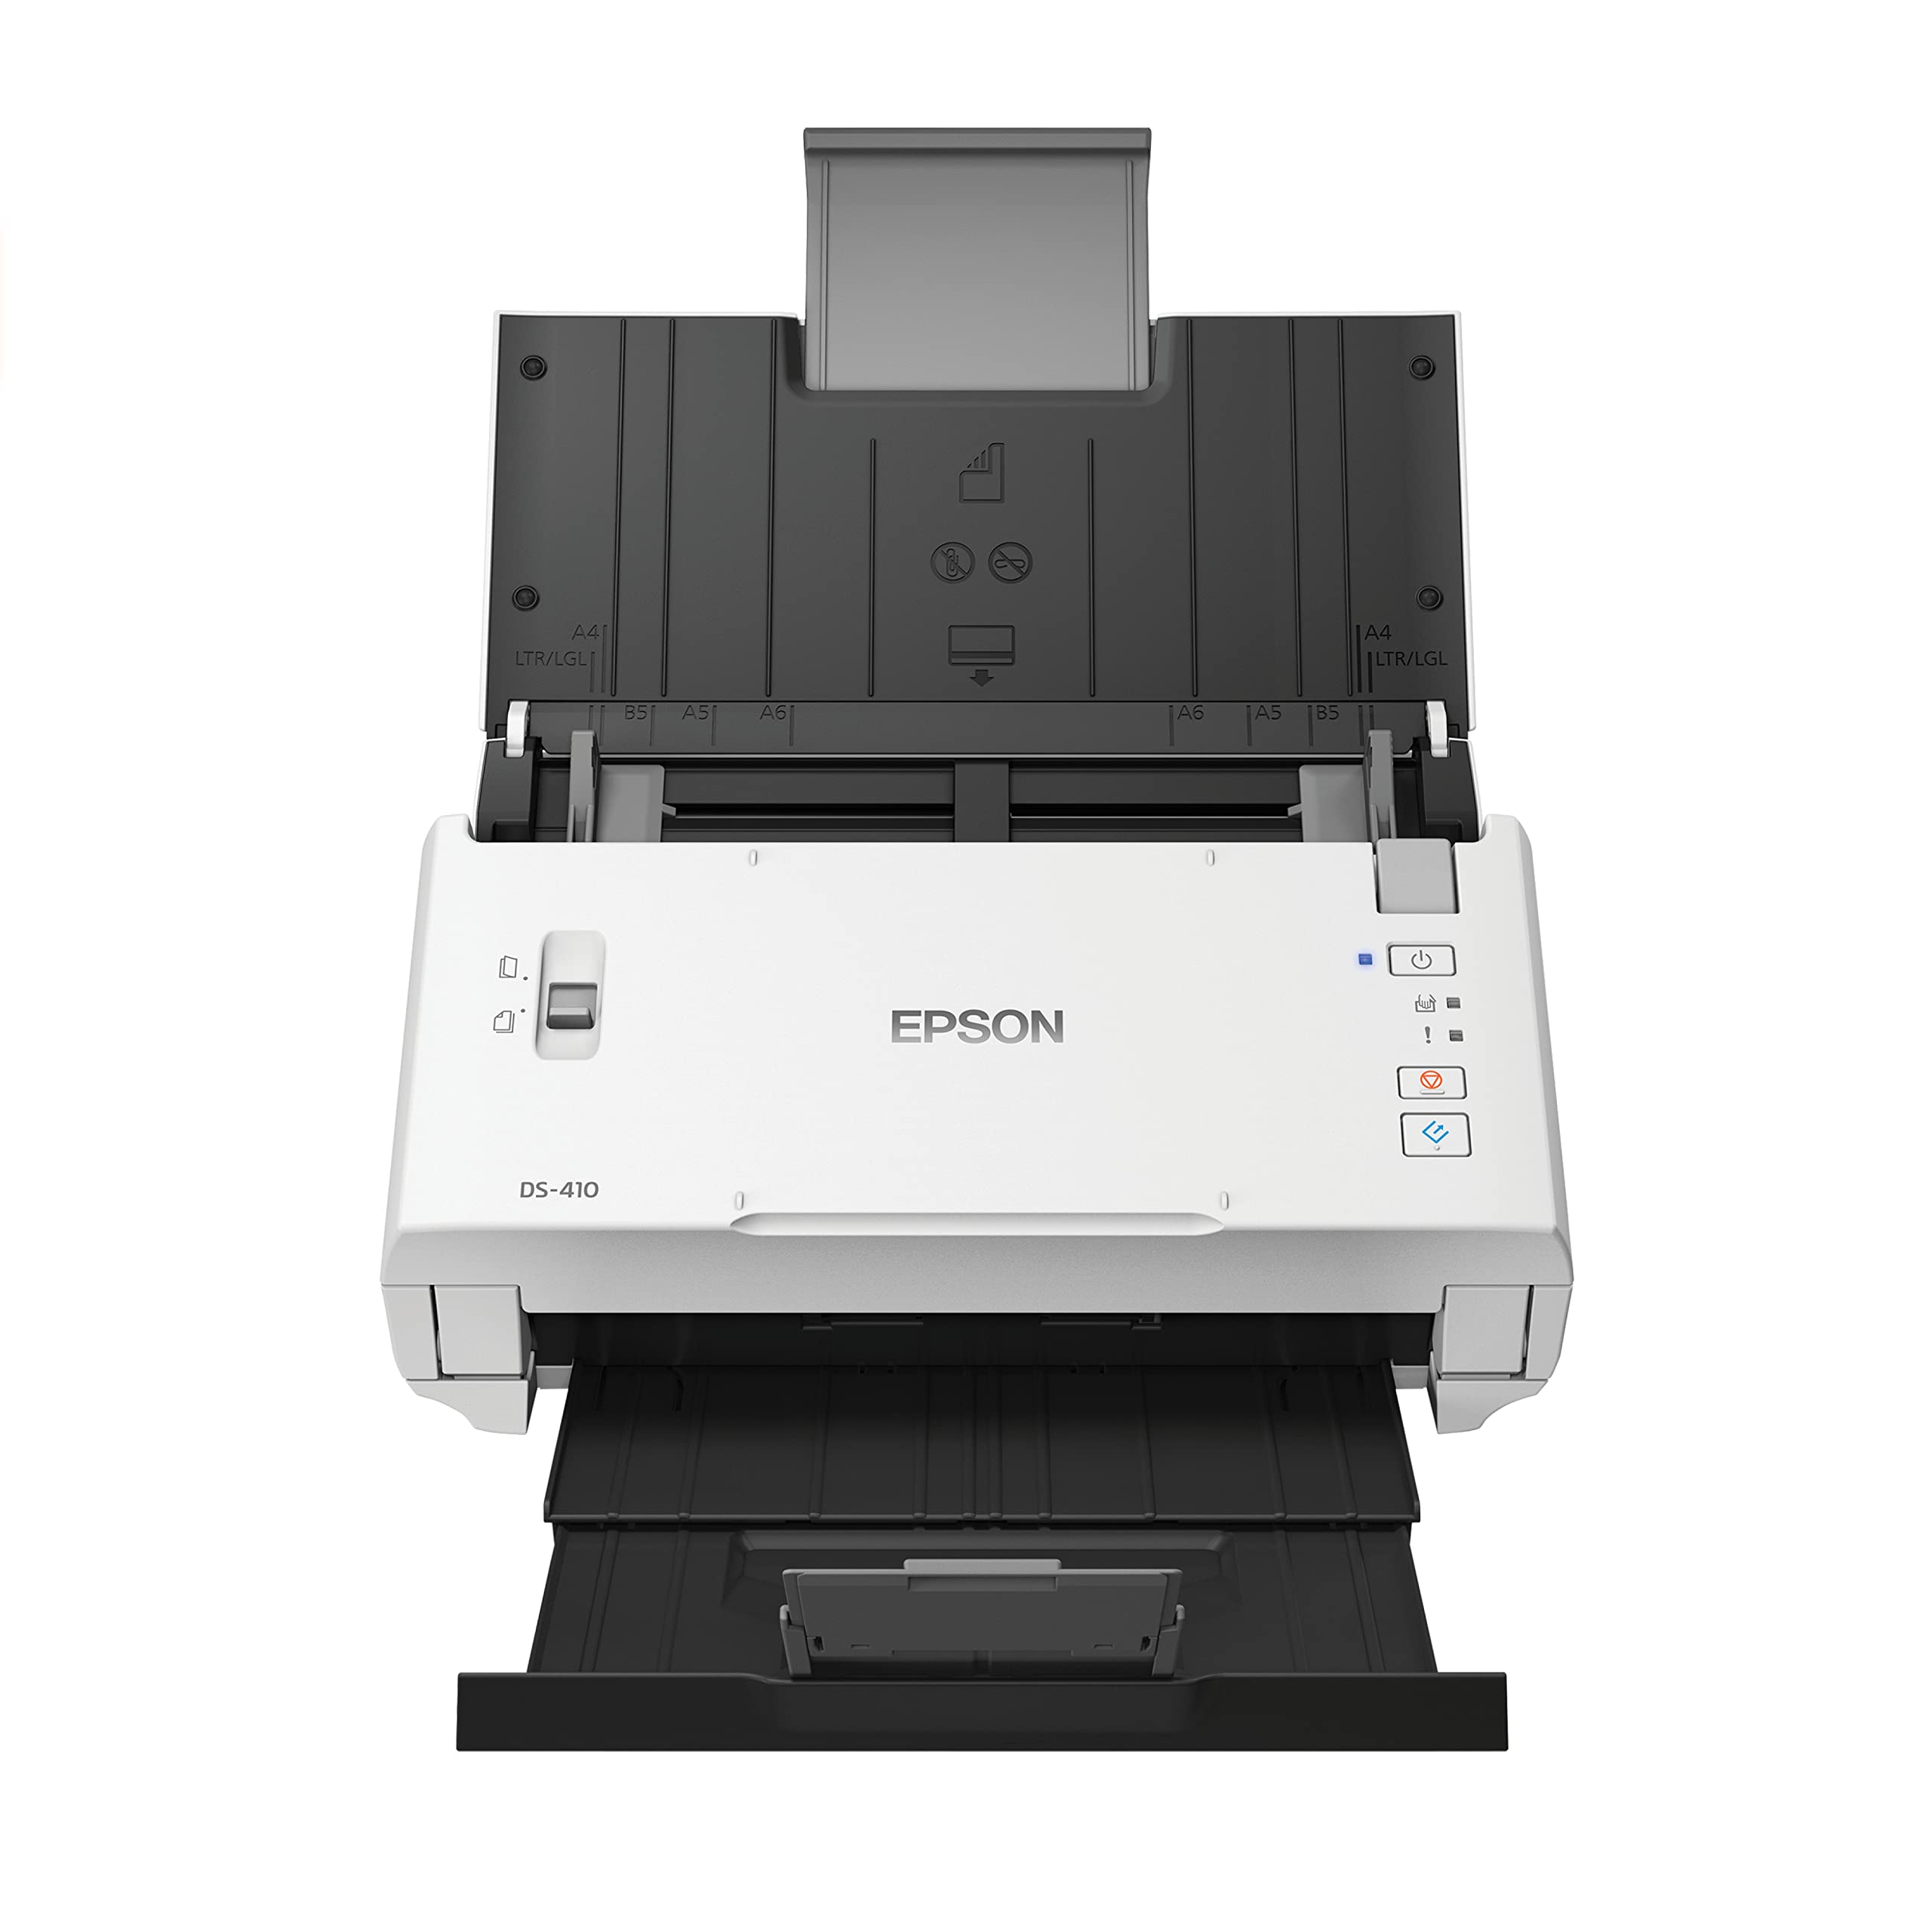 Epson डीएस-410 दस्तावेज़ स्कैनर...